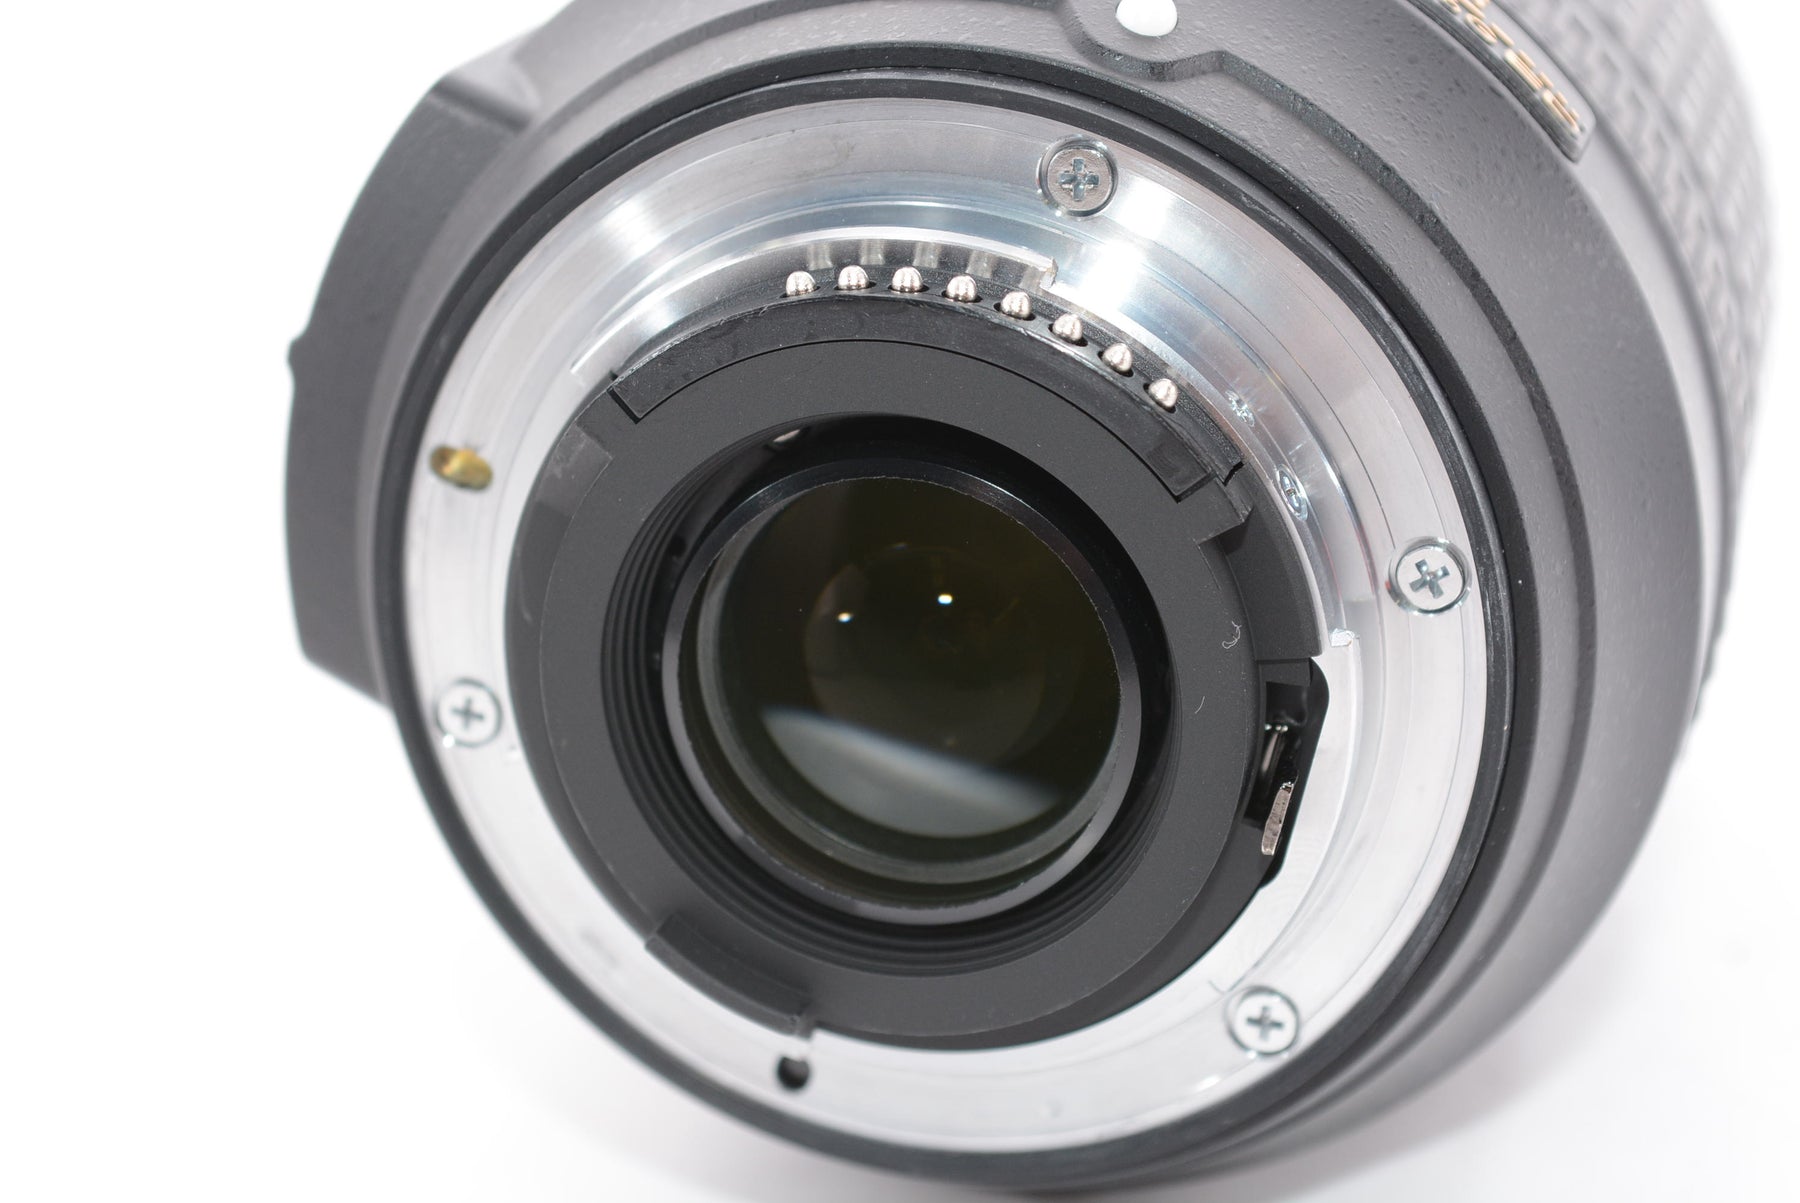 【外観特上級】Nikon 高倍率ズームレンズ AF-S DX NIKKOR 18-140mm f/3.5-5.6G ED VR ニコンDXフォーマット専用